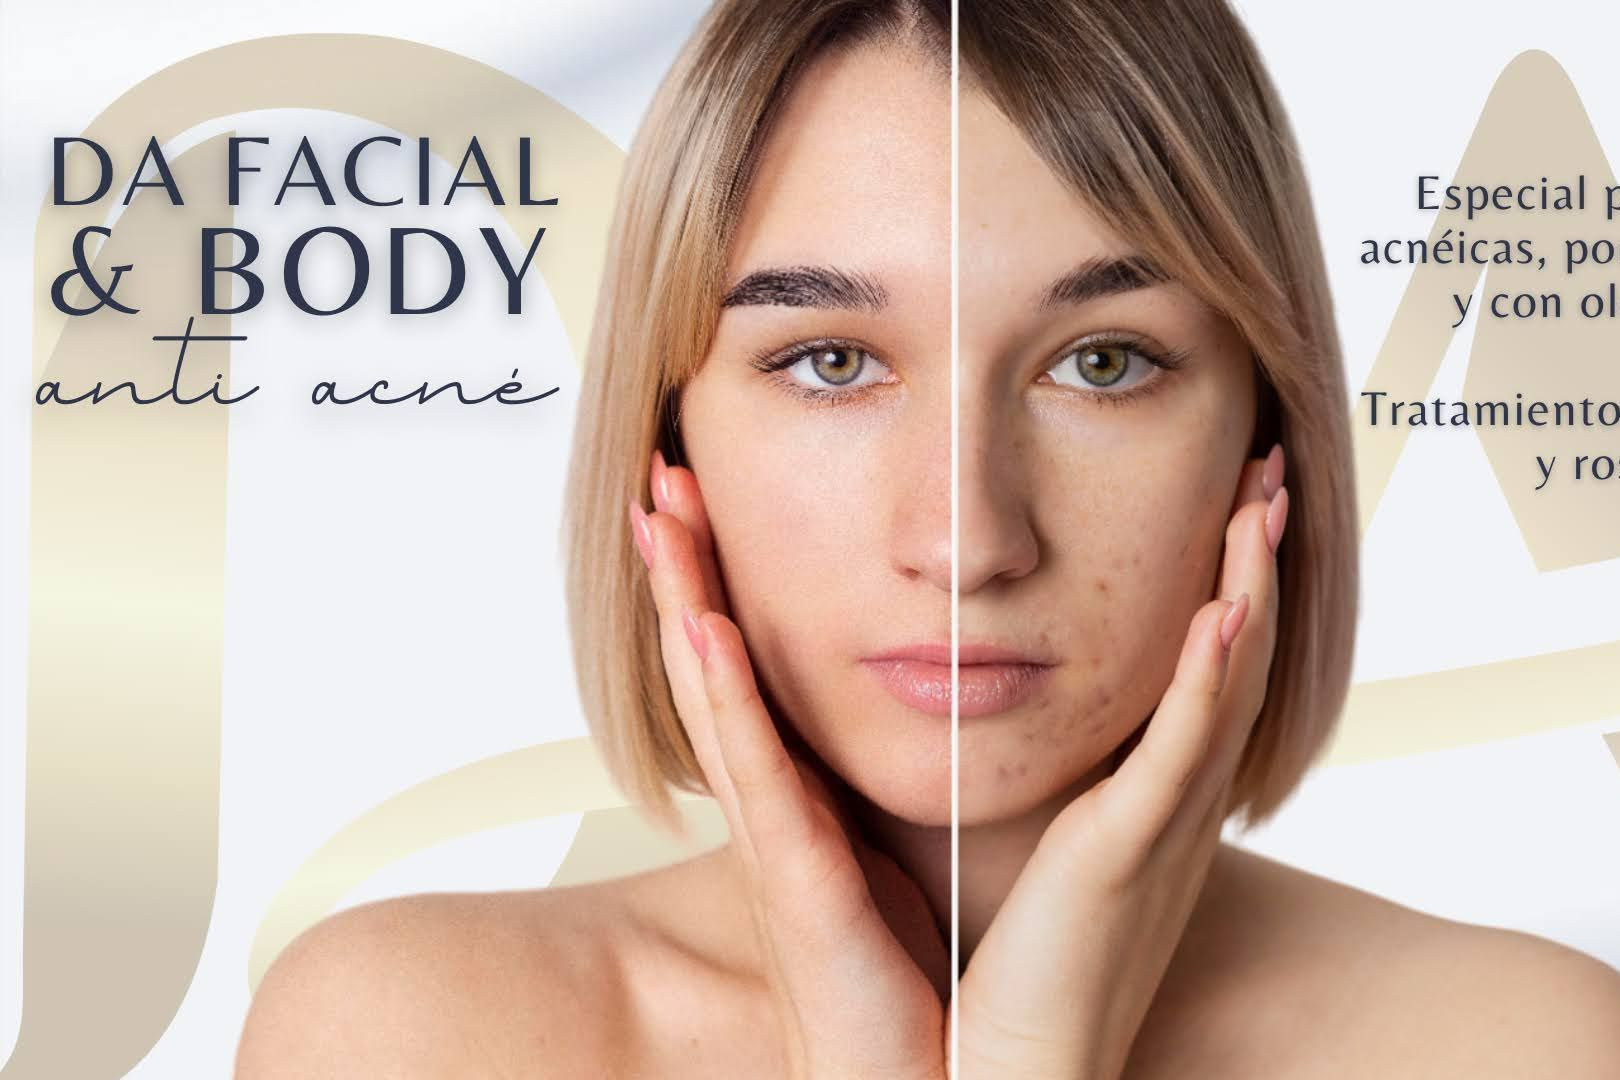 DA Facial & Body Anti Acne portfolio